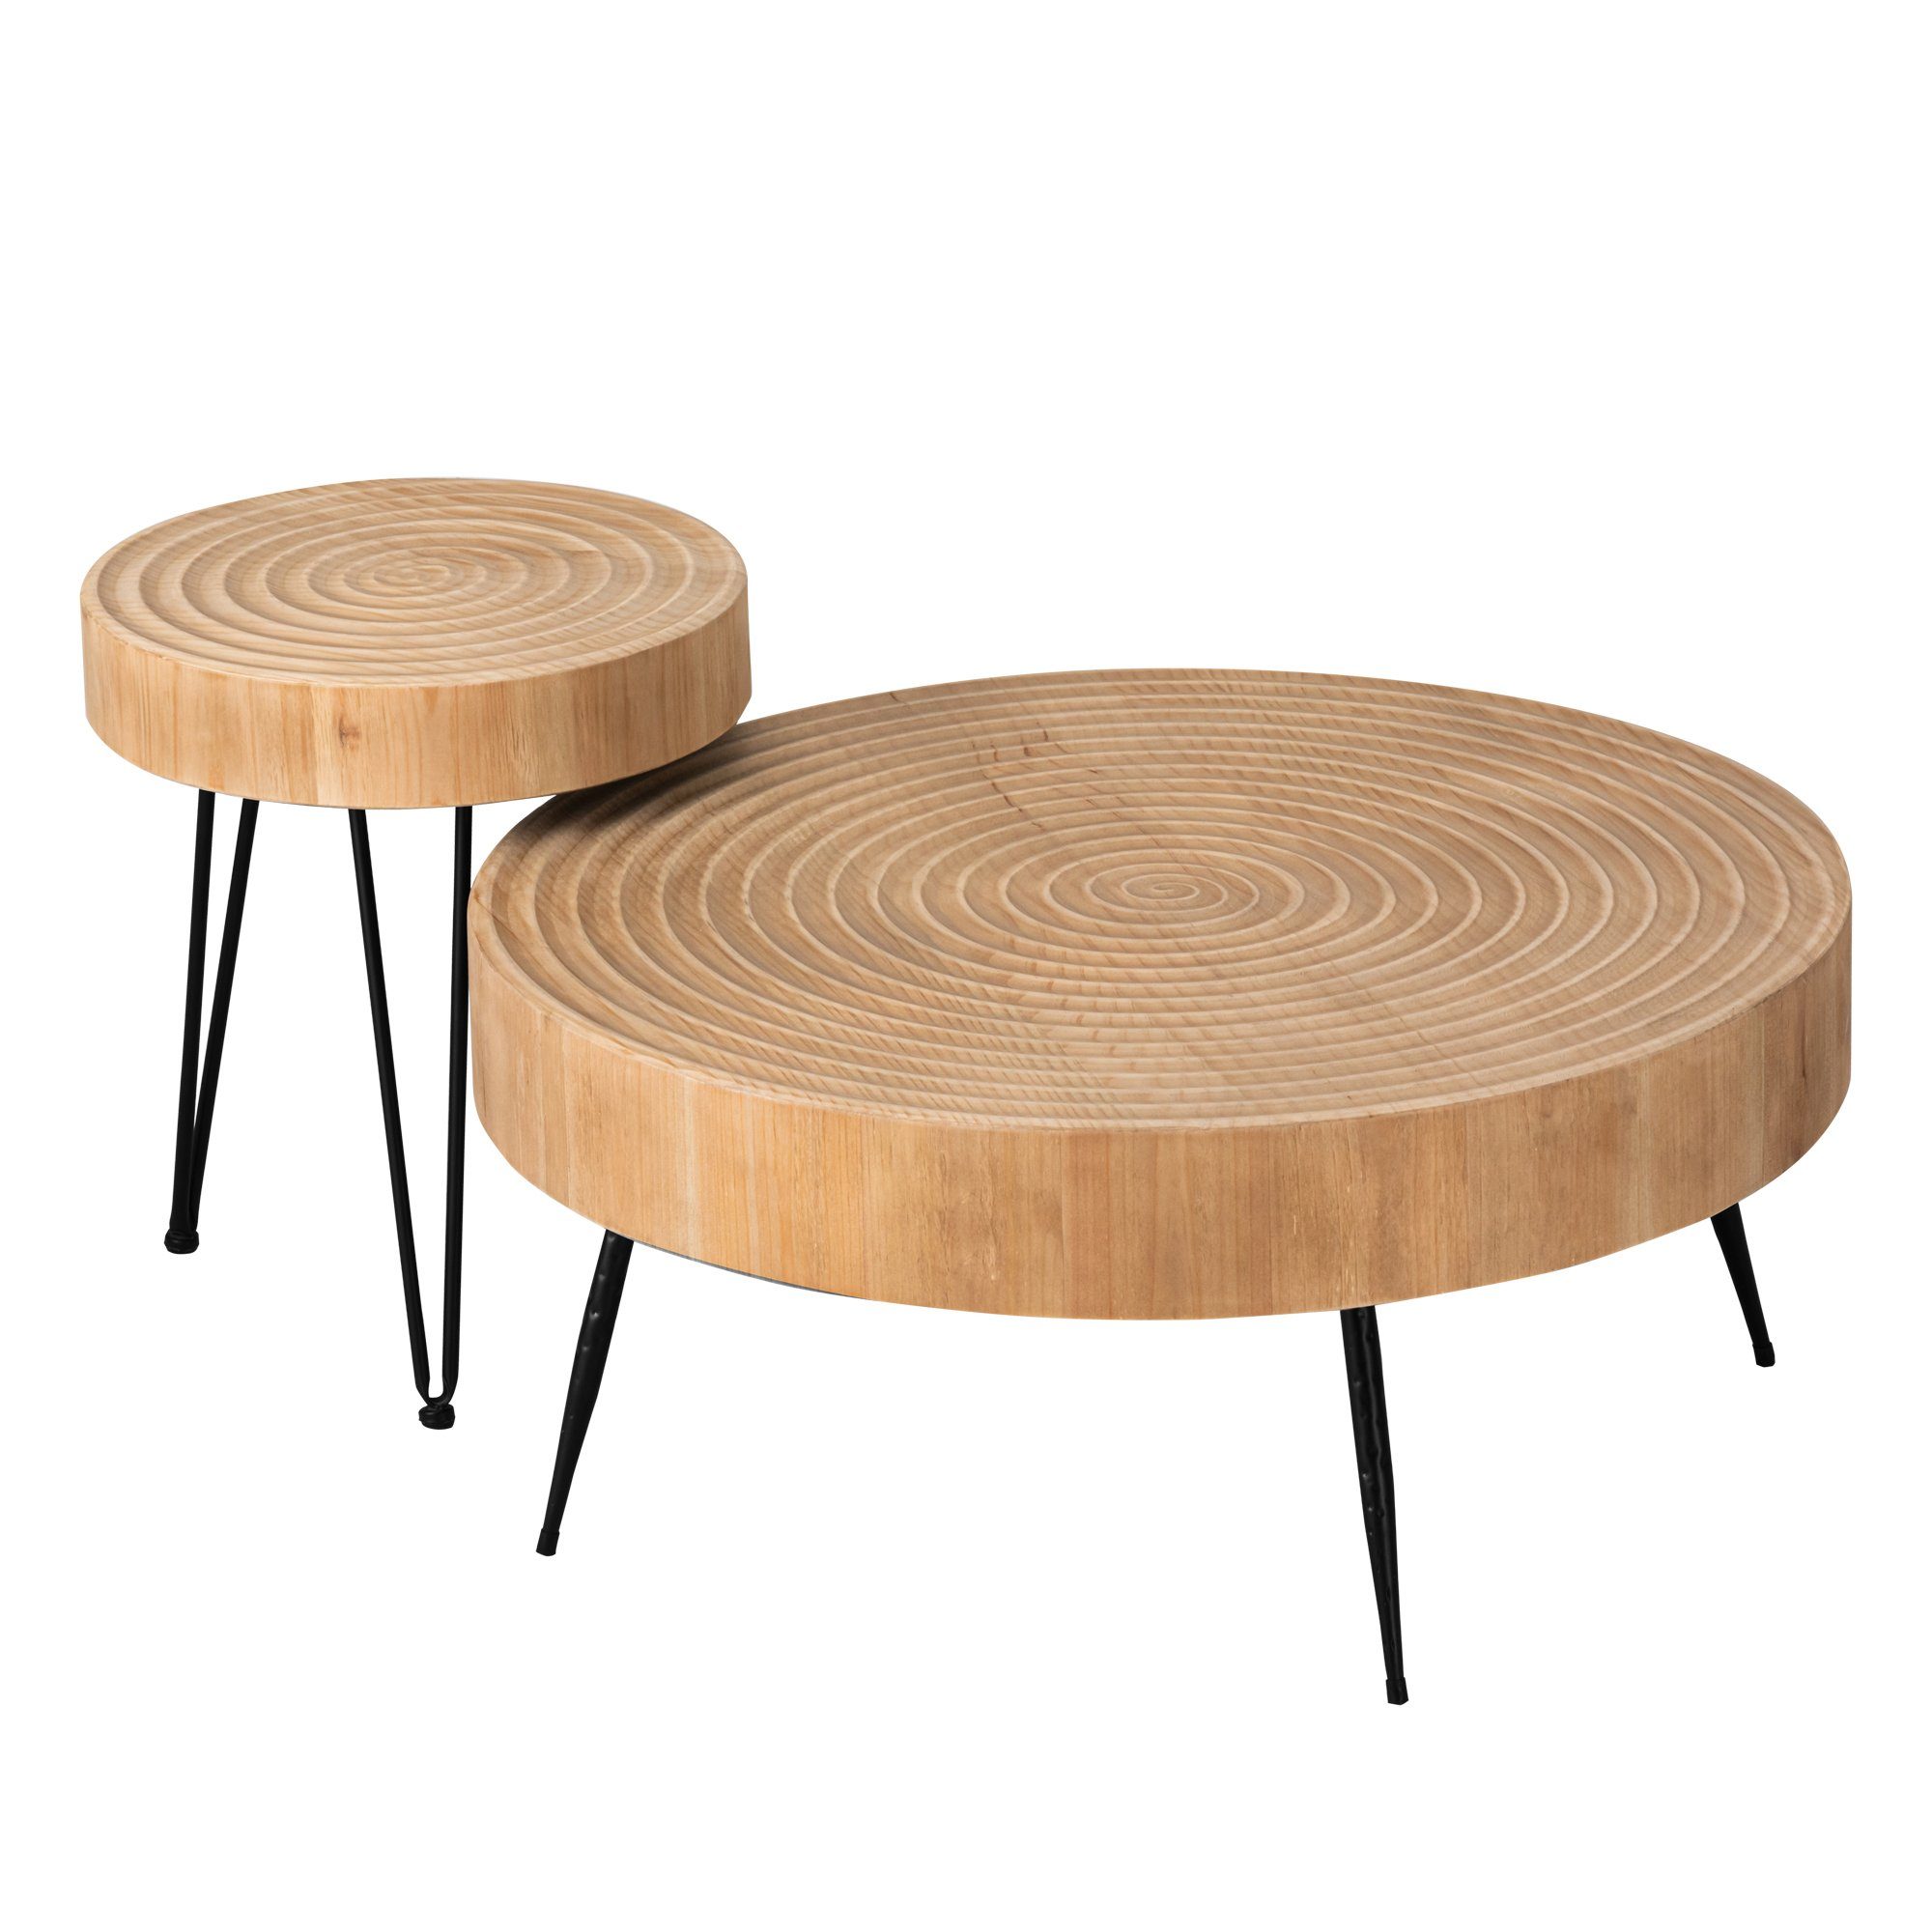 Couchtisch Natur-Kreisen Couchtisch (2-St., Set) 2er,Beistelltisch,Kaffeetisch,Wabi-Sabi-Stil,Vintage,Holz HomeGuru